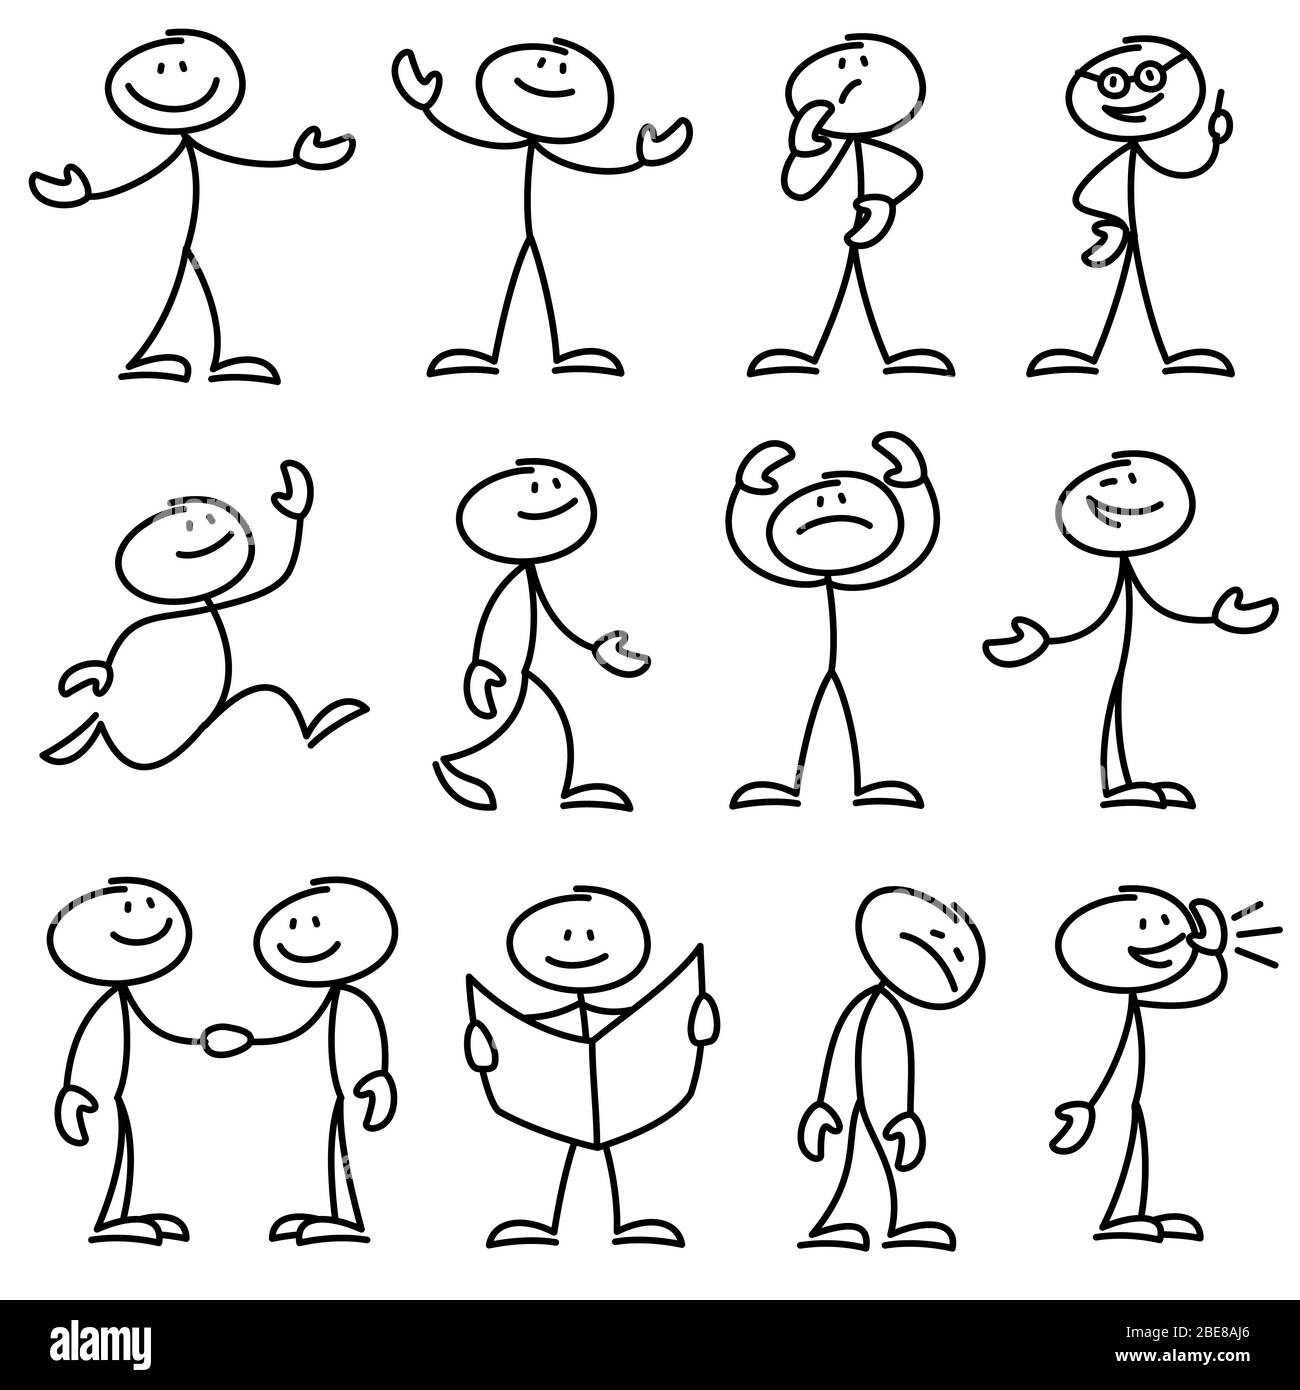 Cartoon Hand gezeichnete Stick Mann in verschiedenen Posen Vektor-Set. Cartoon Stock Person Hand gezeichnet Doodle Skizze Illustration Stock Vektor